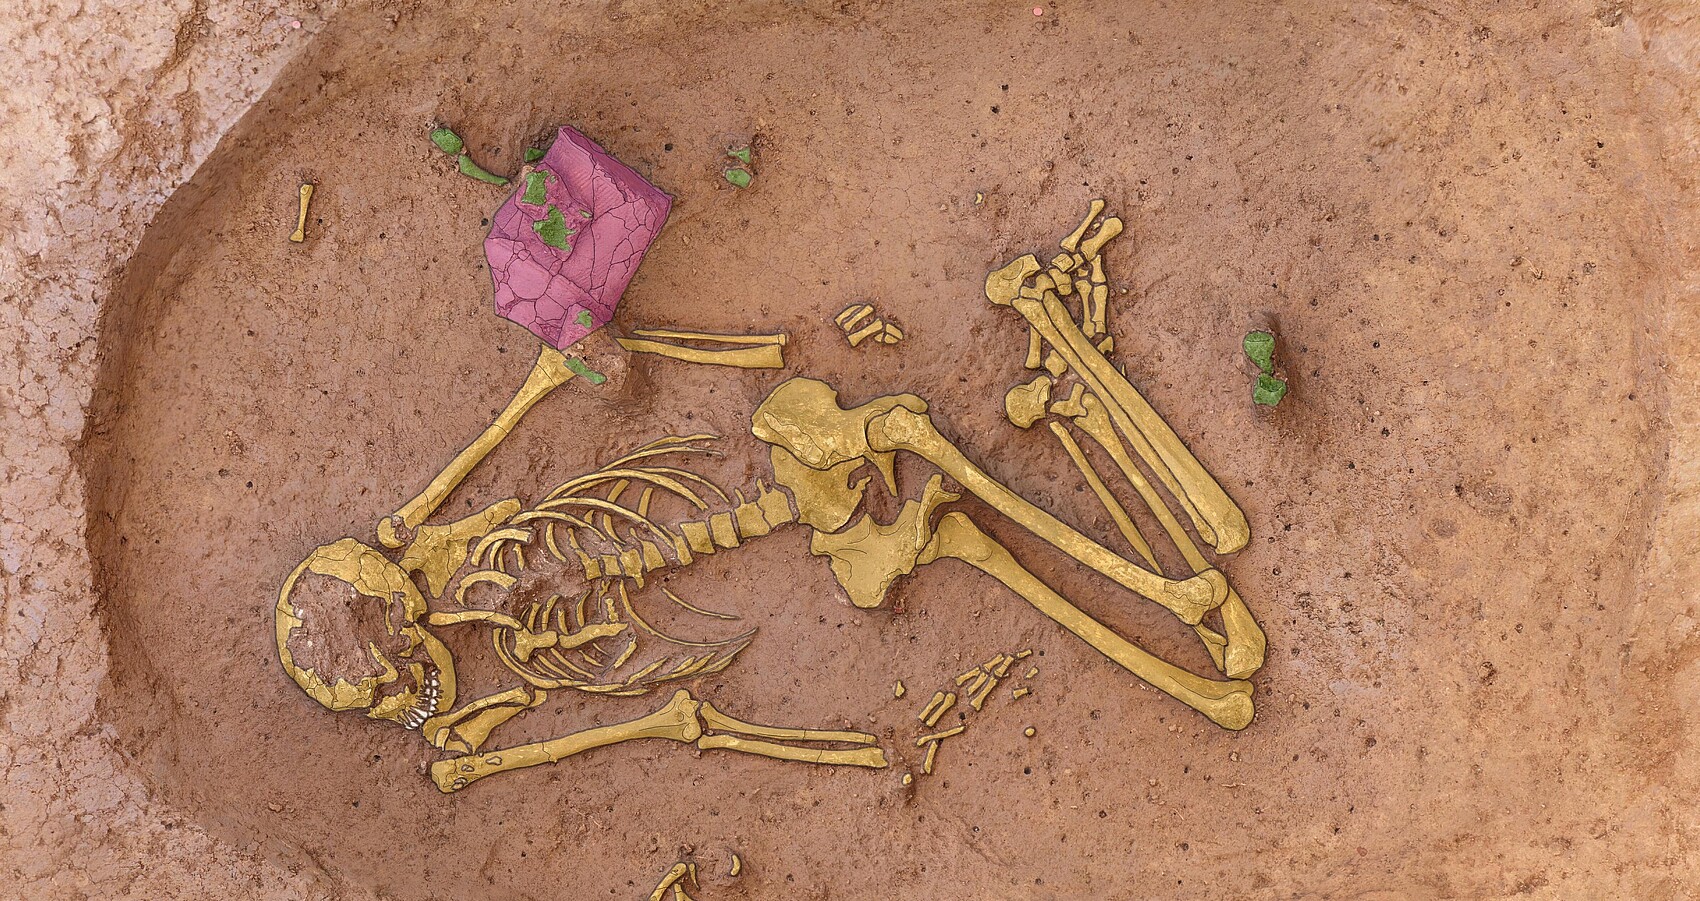 Bild zeigt ein Skelett in der Erde liegend